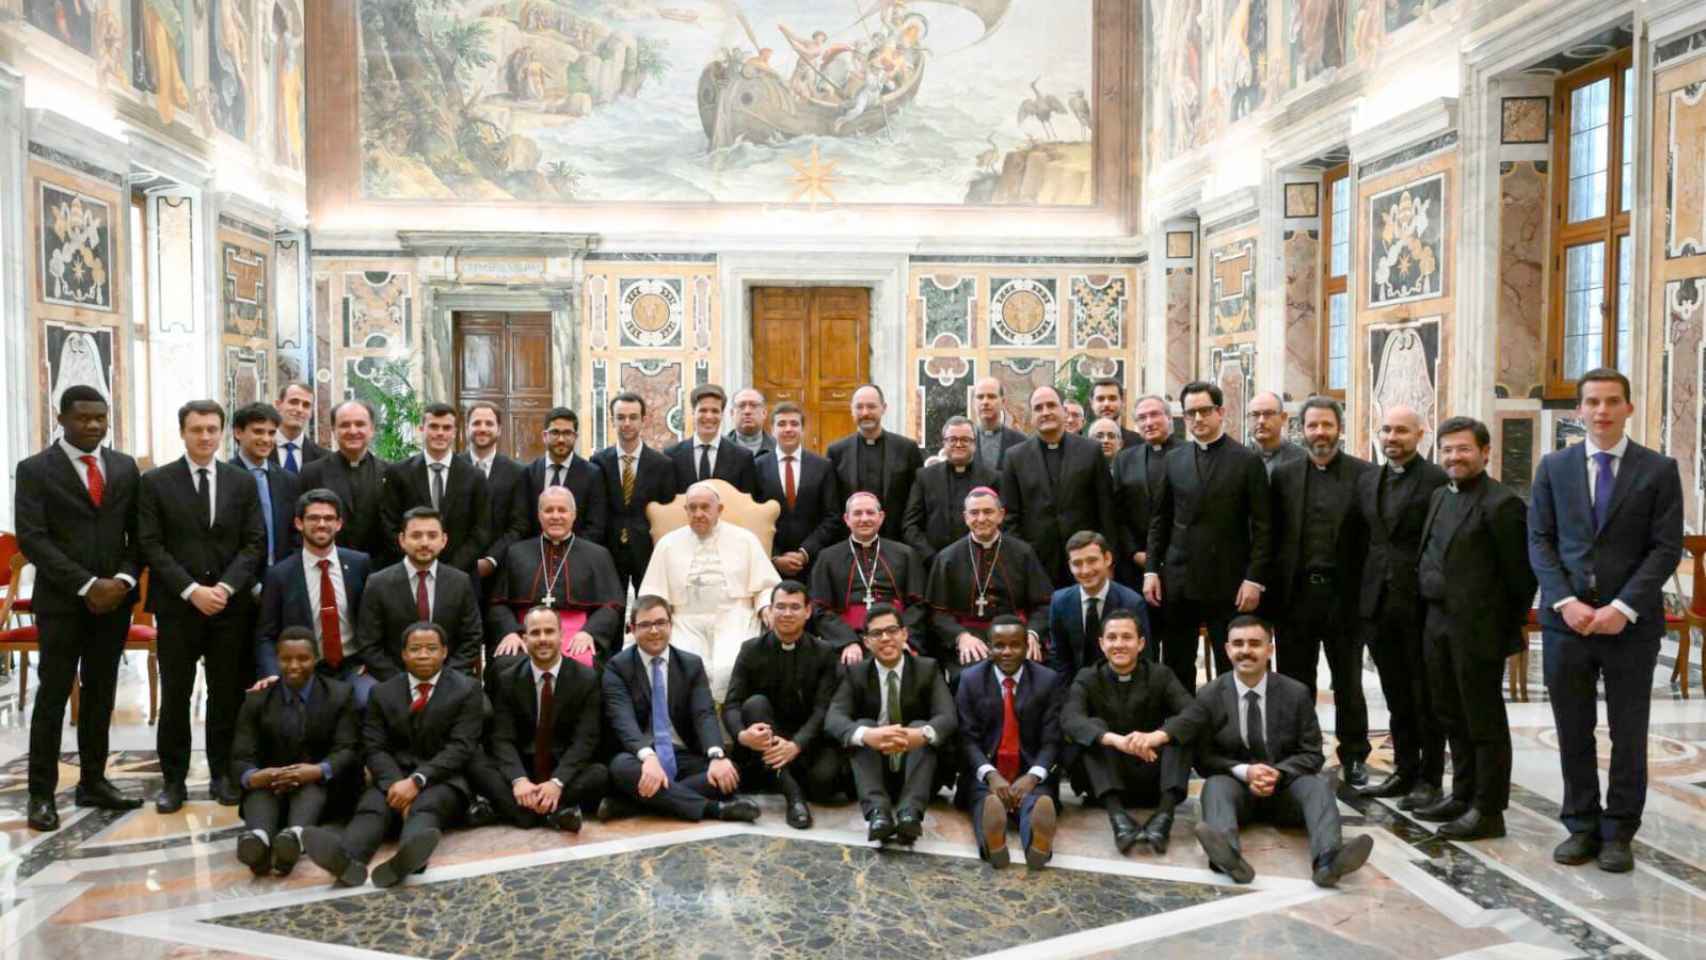 El papa Francisco recibe en audiencia privada a los seminaristas que se forman en la Archidiócesis de Burgos